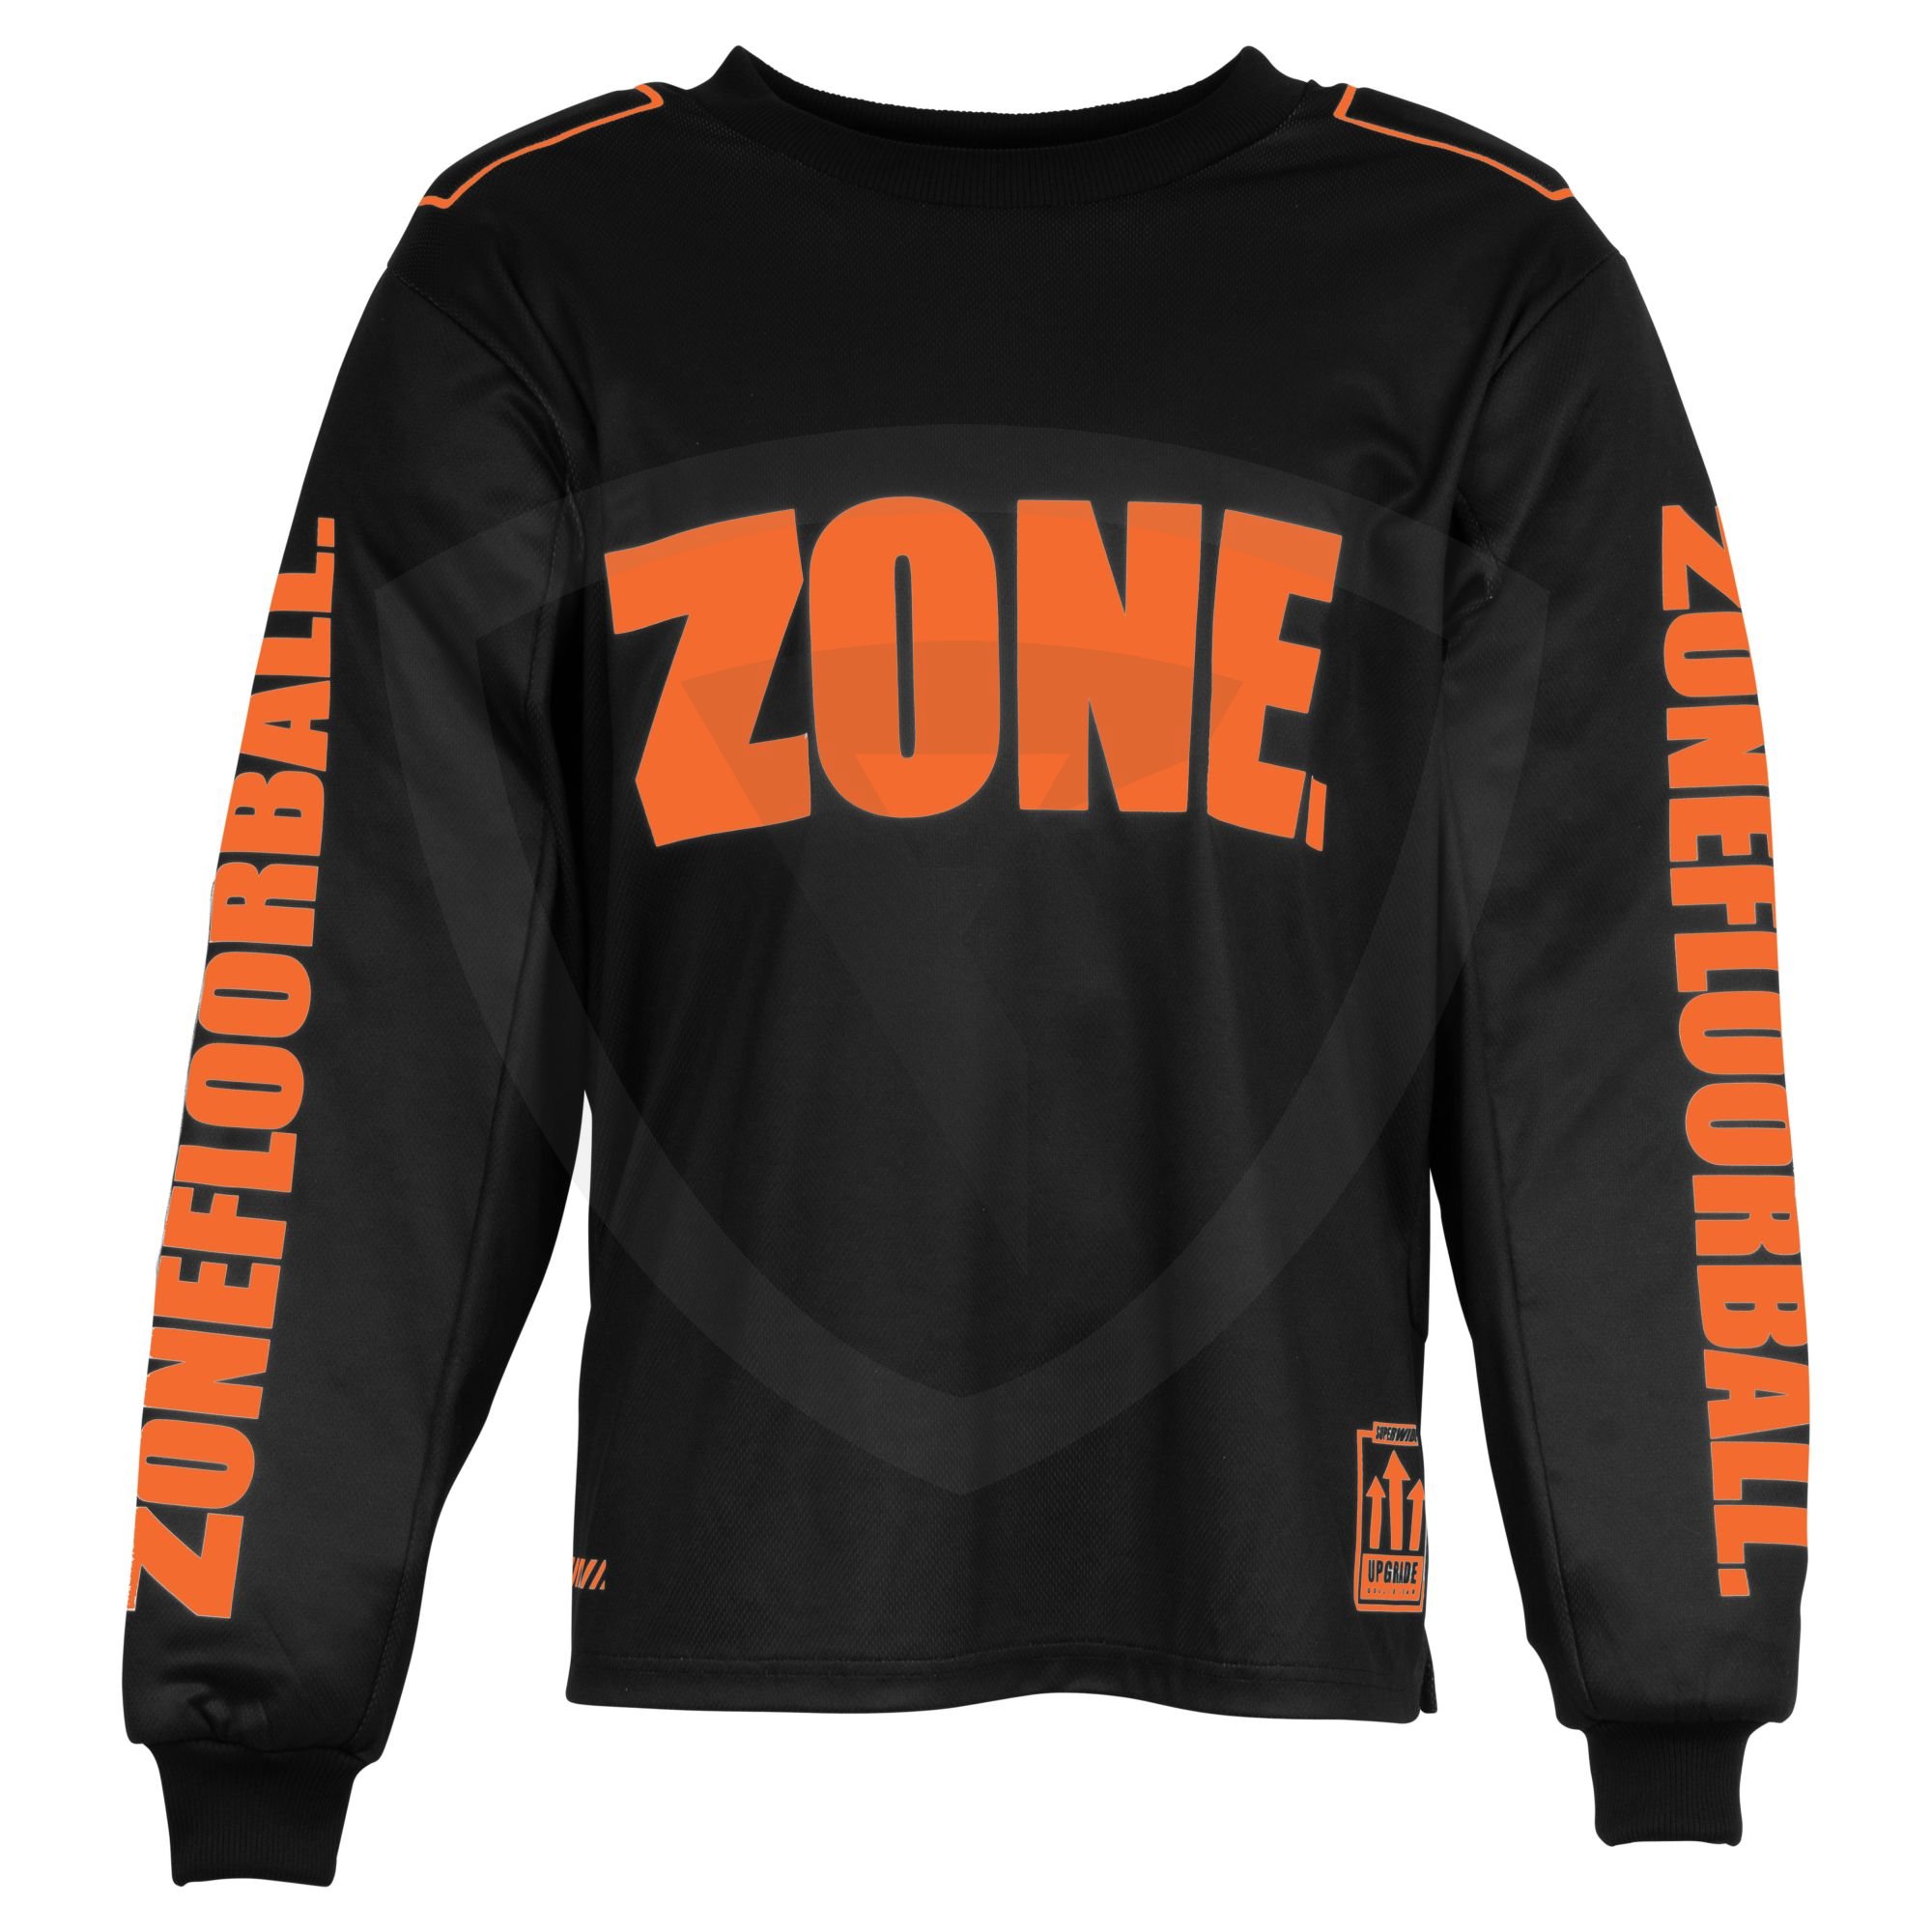 Zone UPGRADE SW Goalie Sweater SR. Black-Lava Orange XXL černá-oranžová